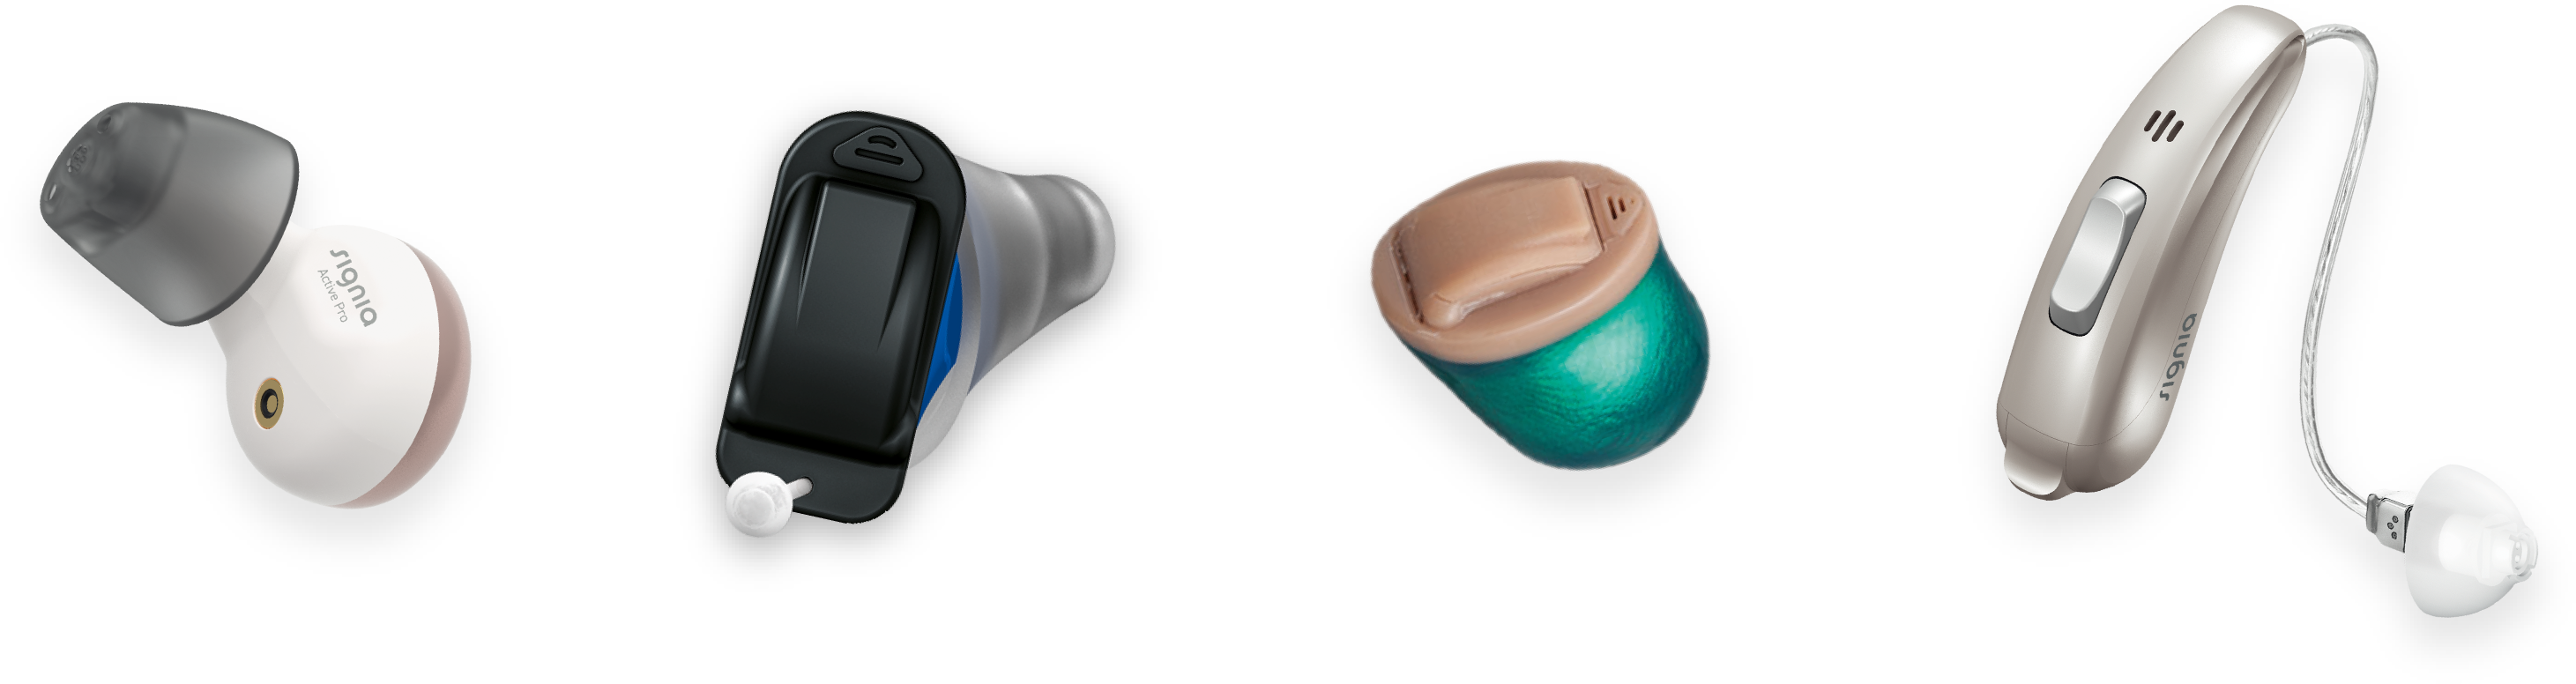 4種の補聴器